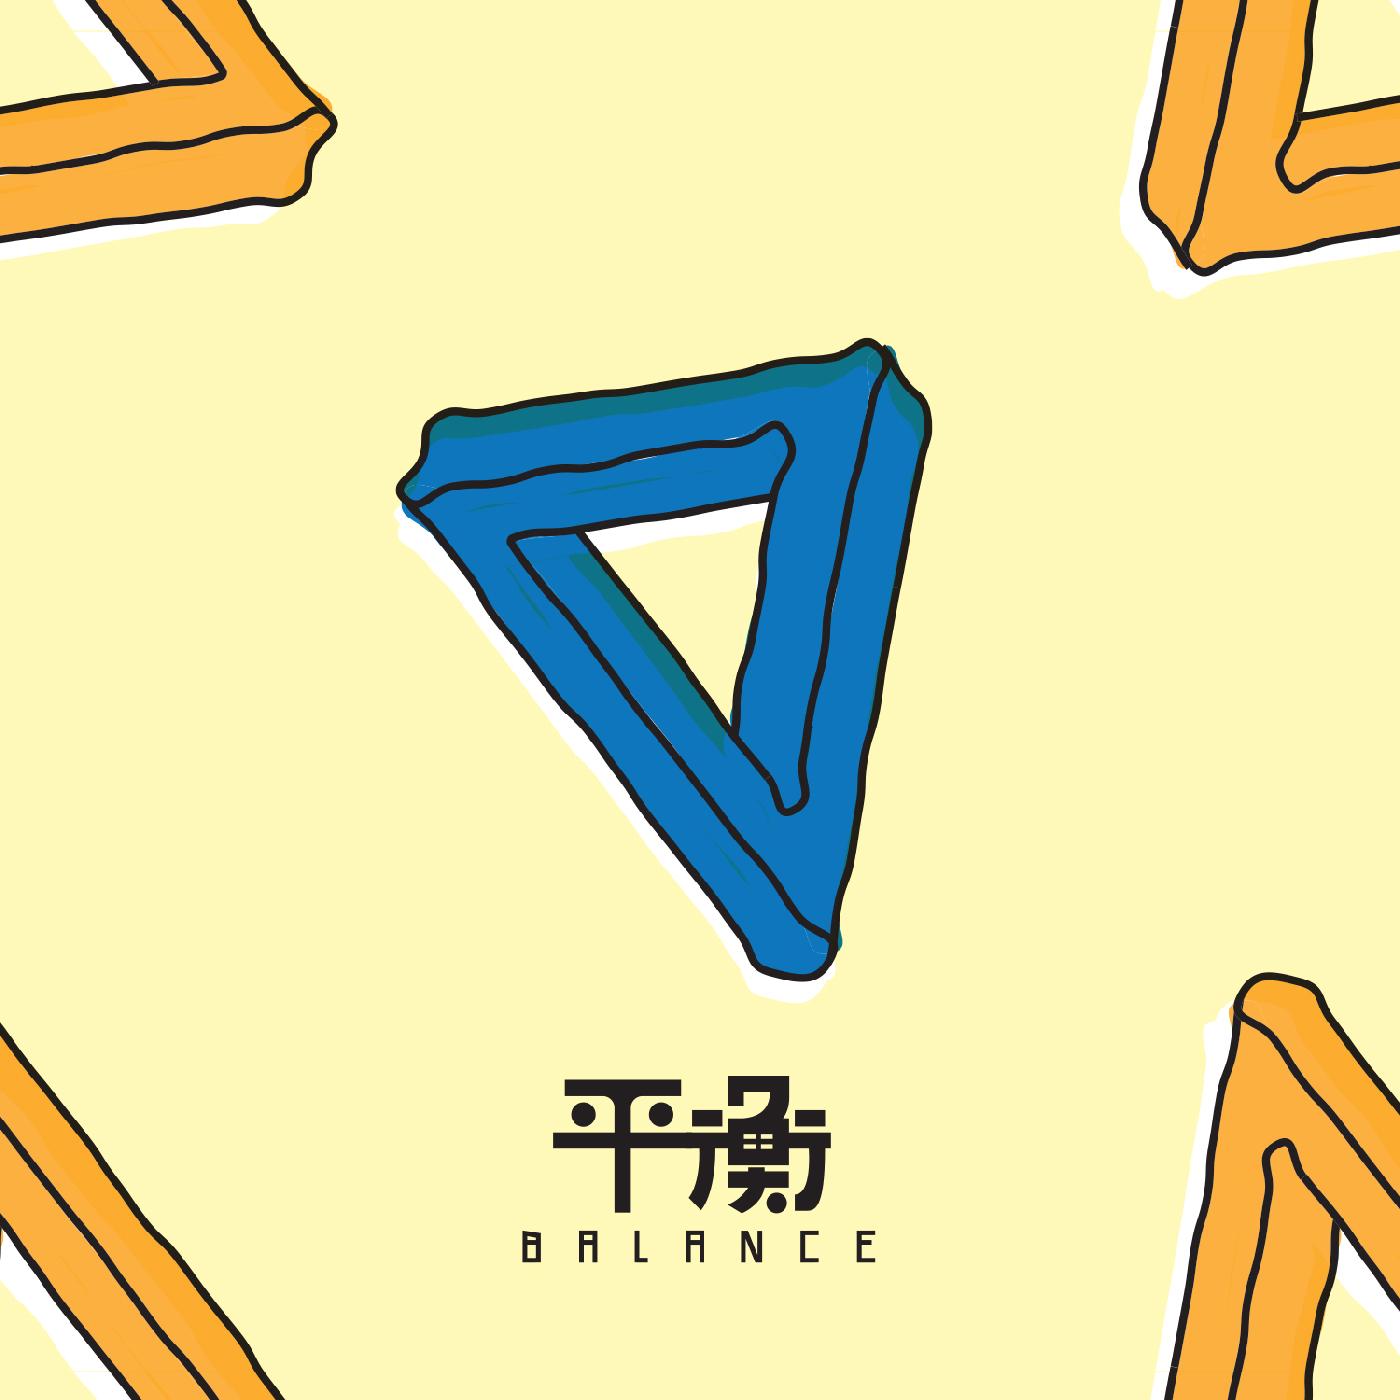 Elephant Gym | Balance (CREME & SKY BLUE A/B VINYL) | Vinyl